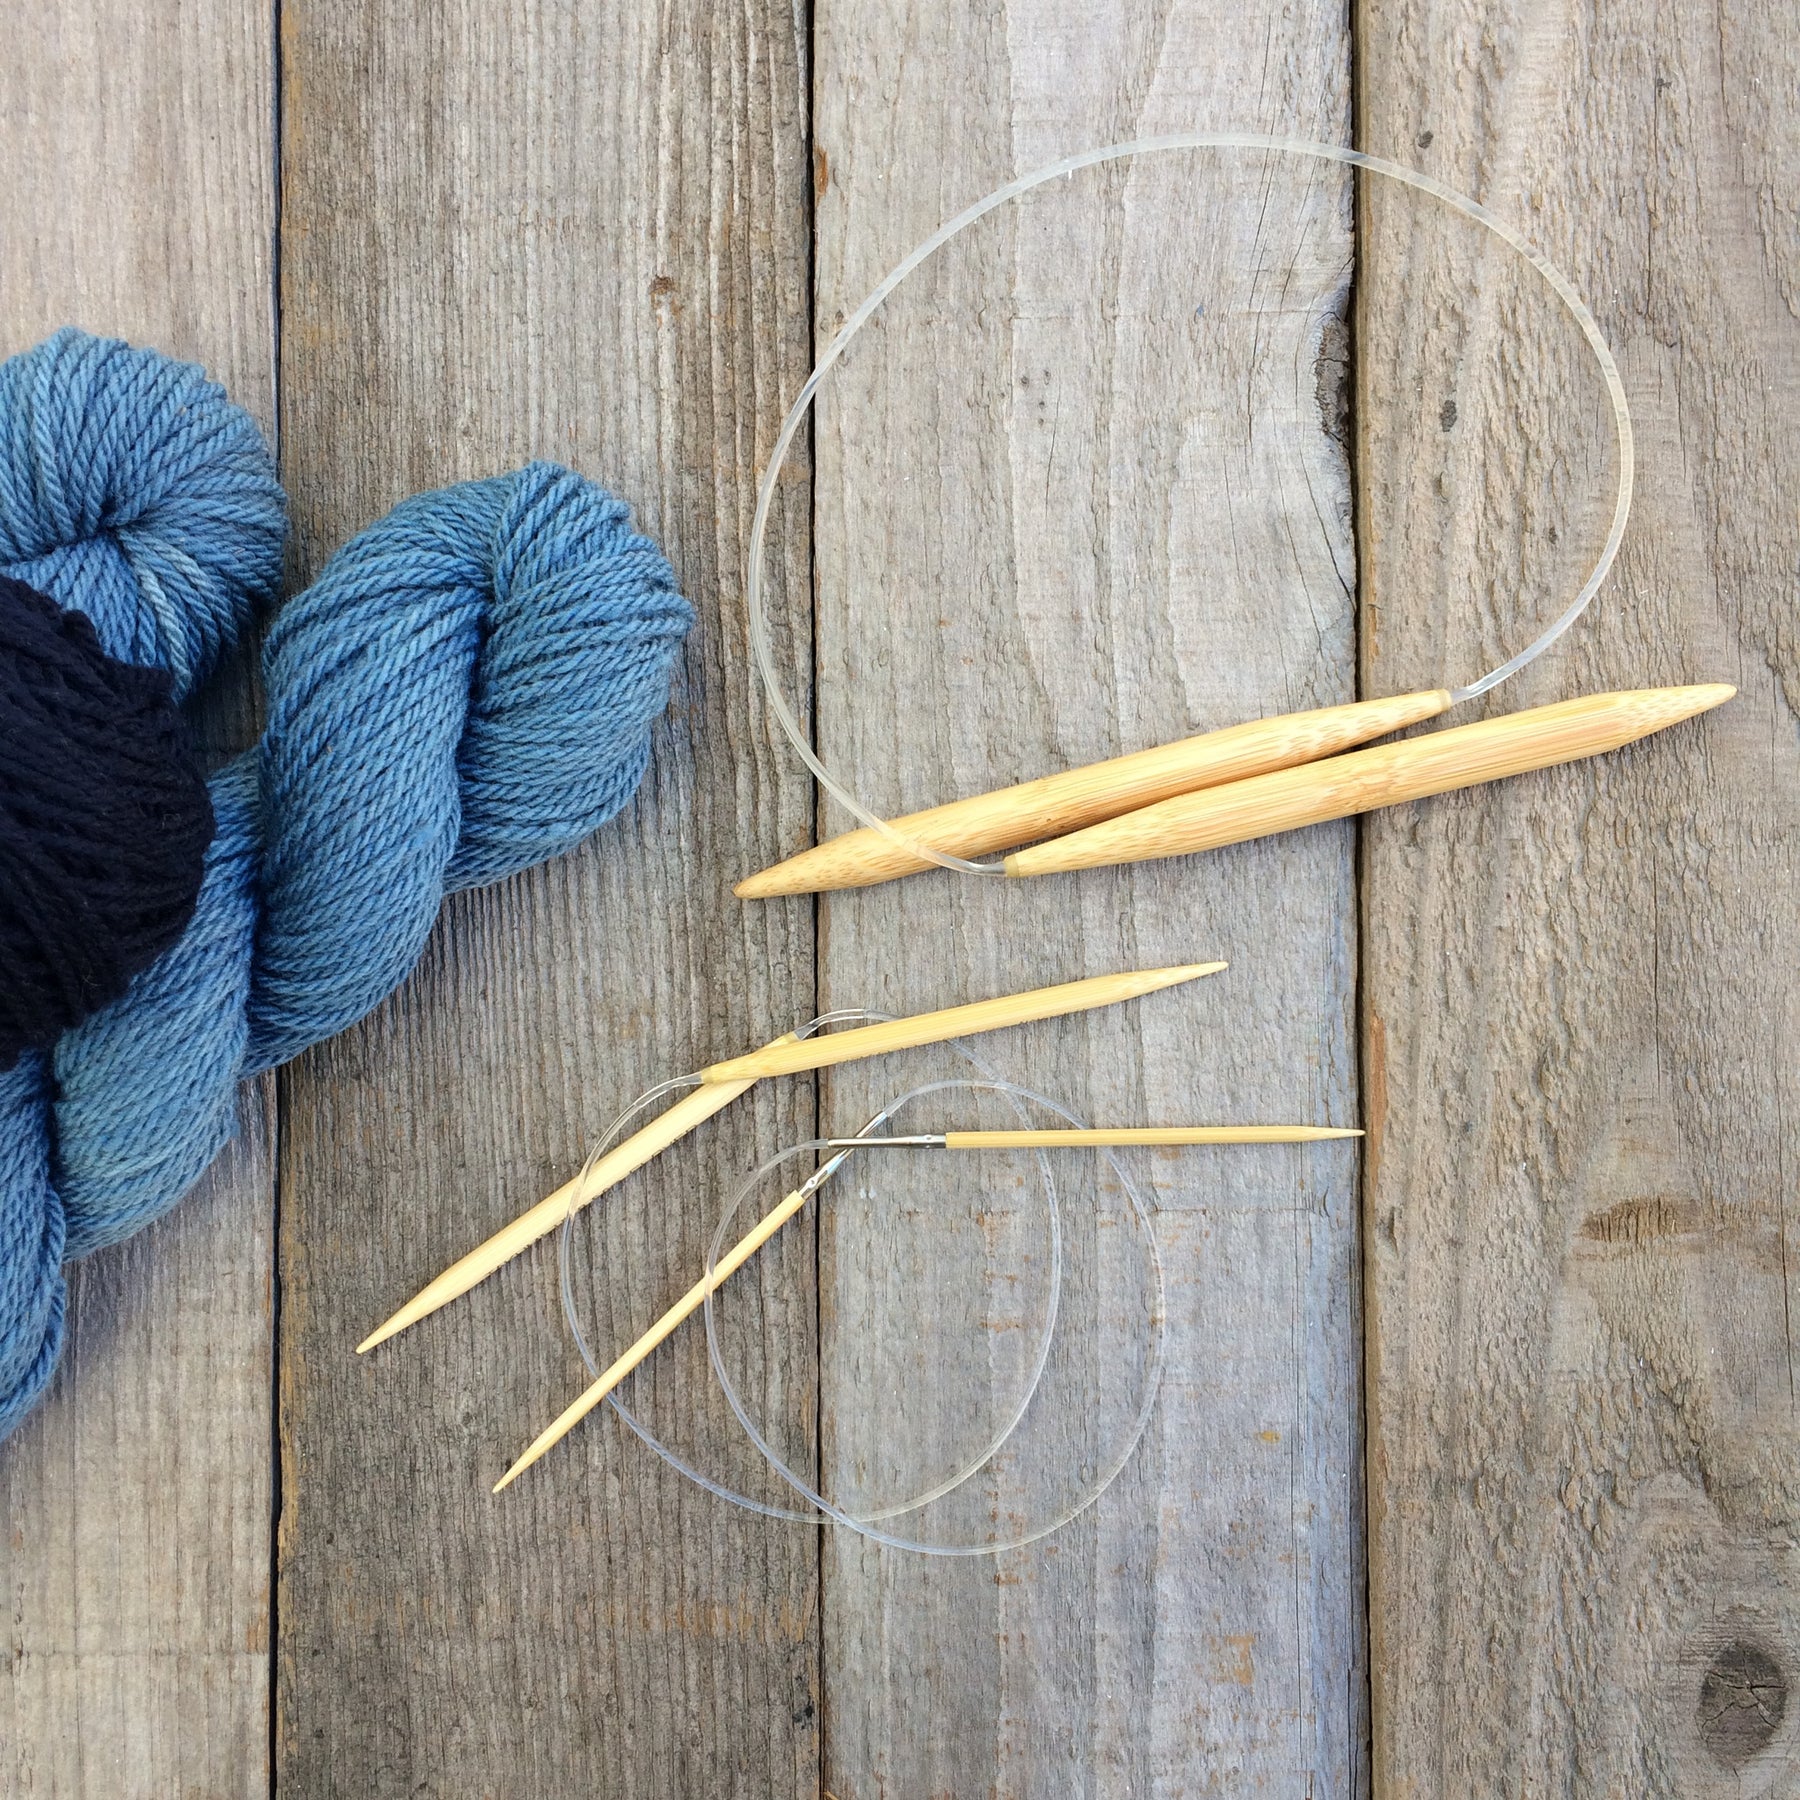 Knitting Needles - Pkg of 2, 10, Size 7